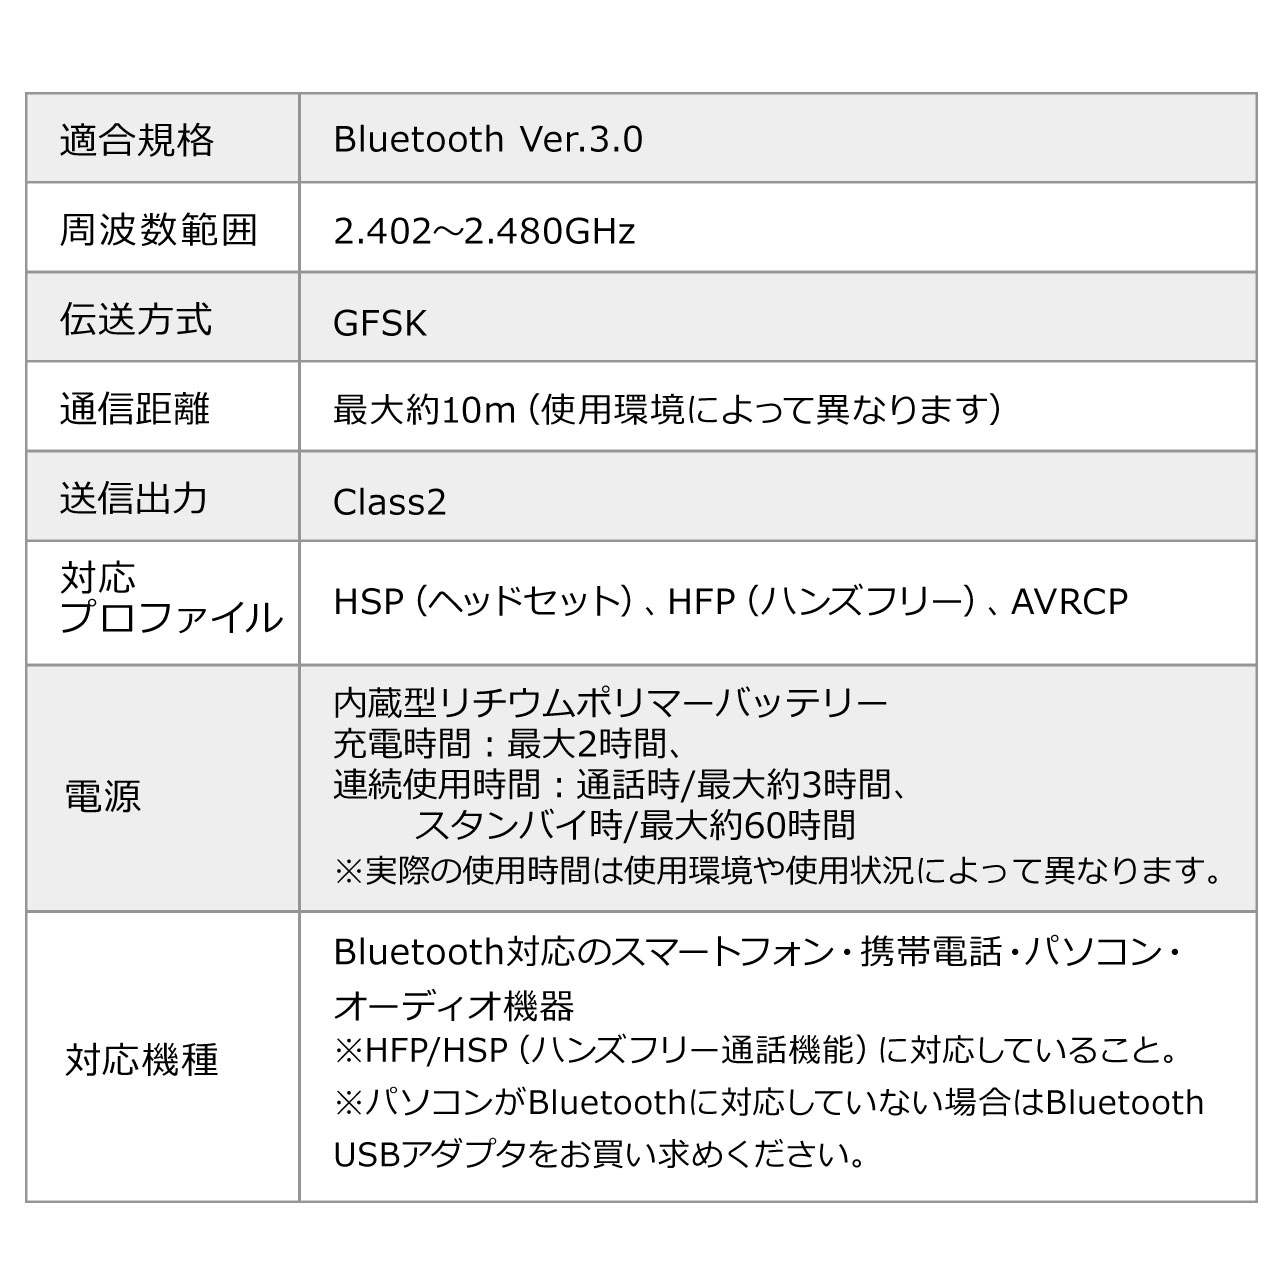 BluetoothCz(BluetoothmwbhzEЎEʘbΉ) 400-BTMH006BK